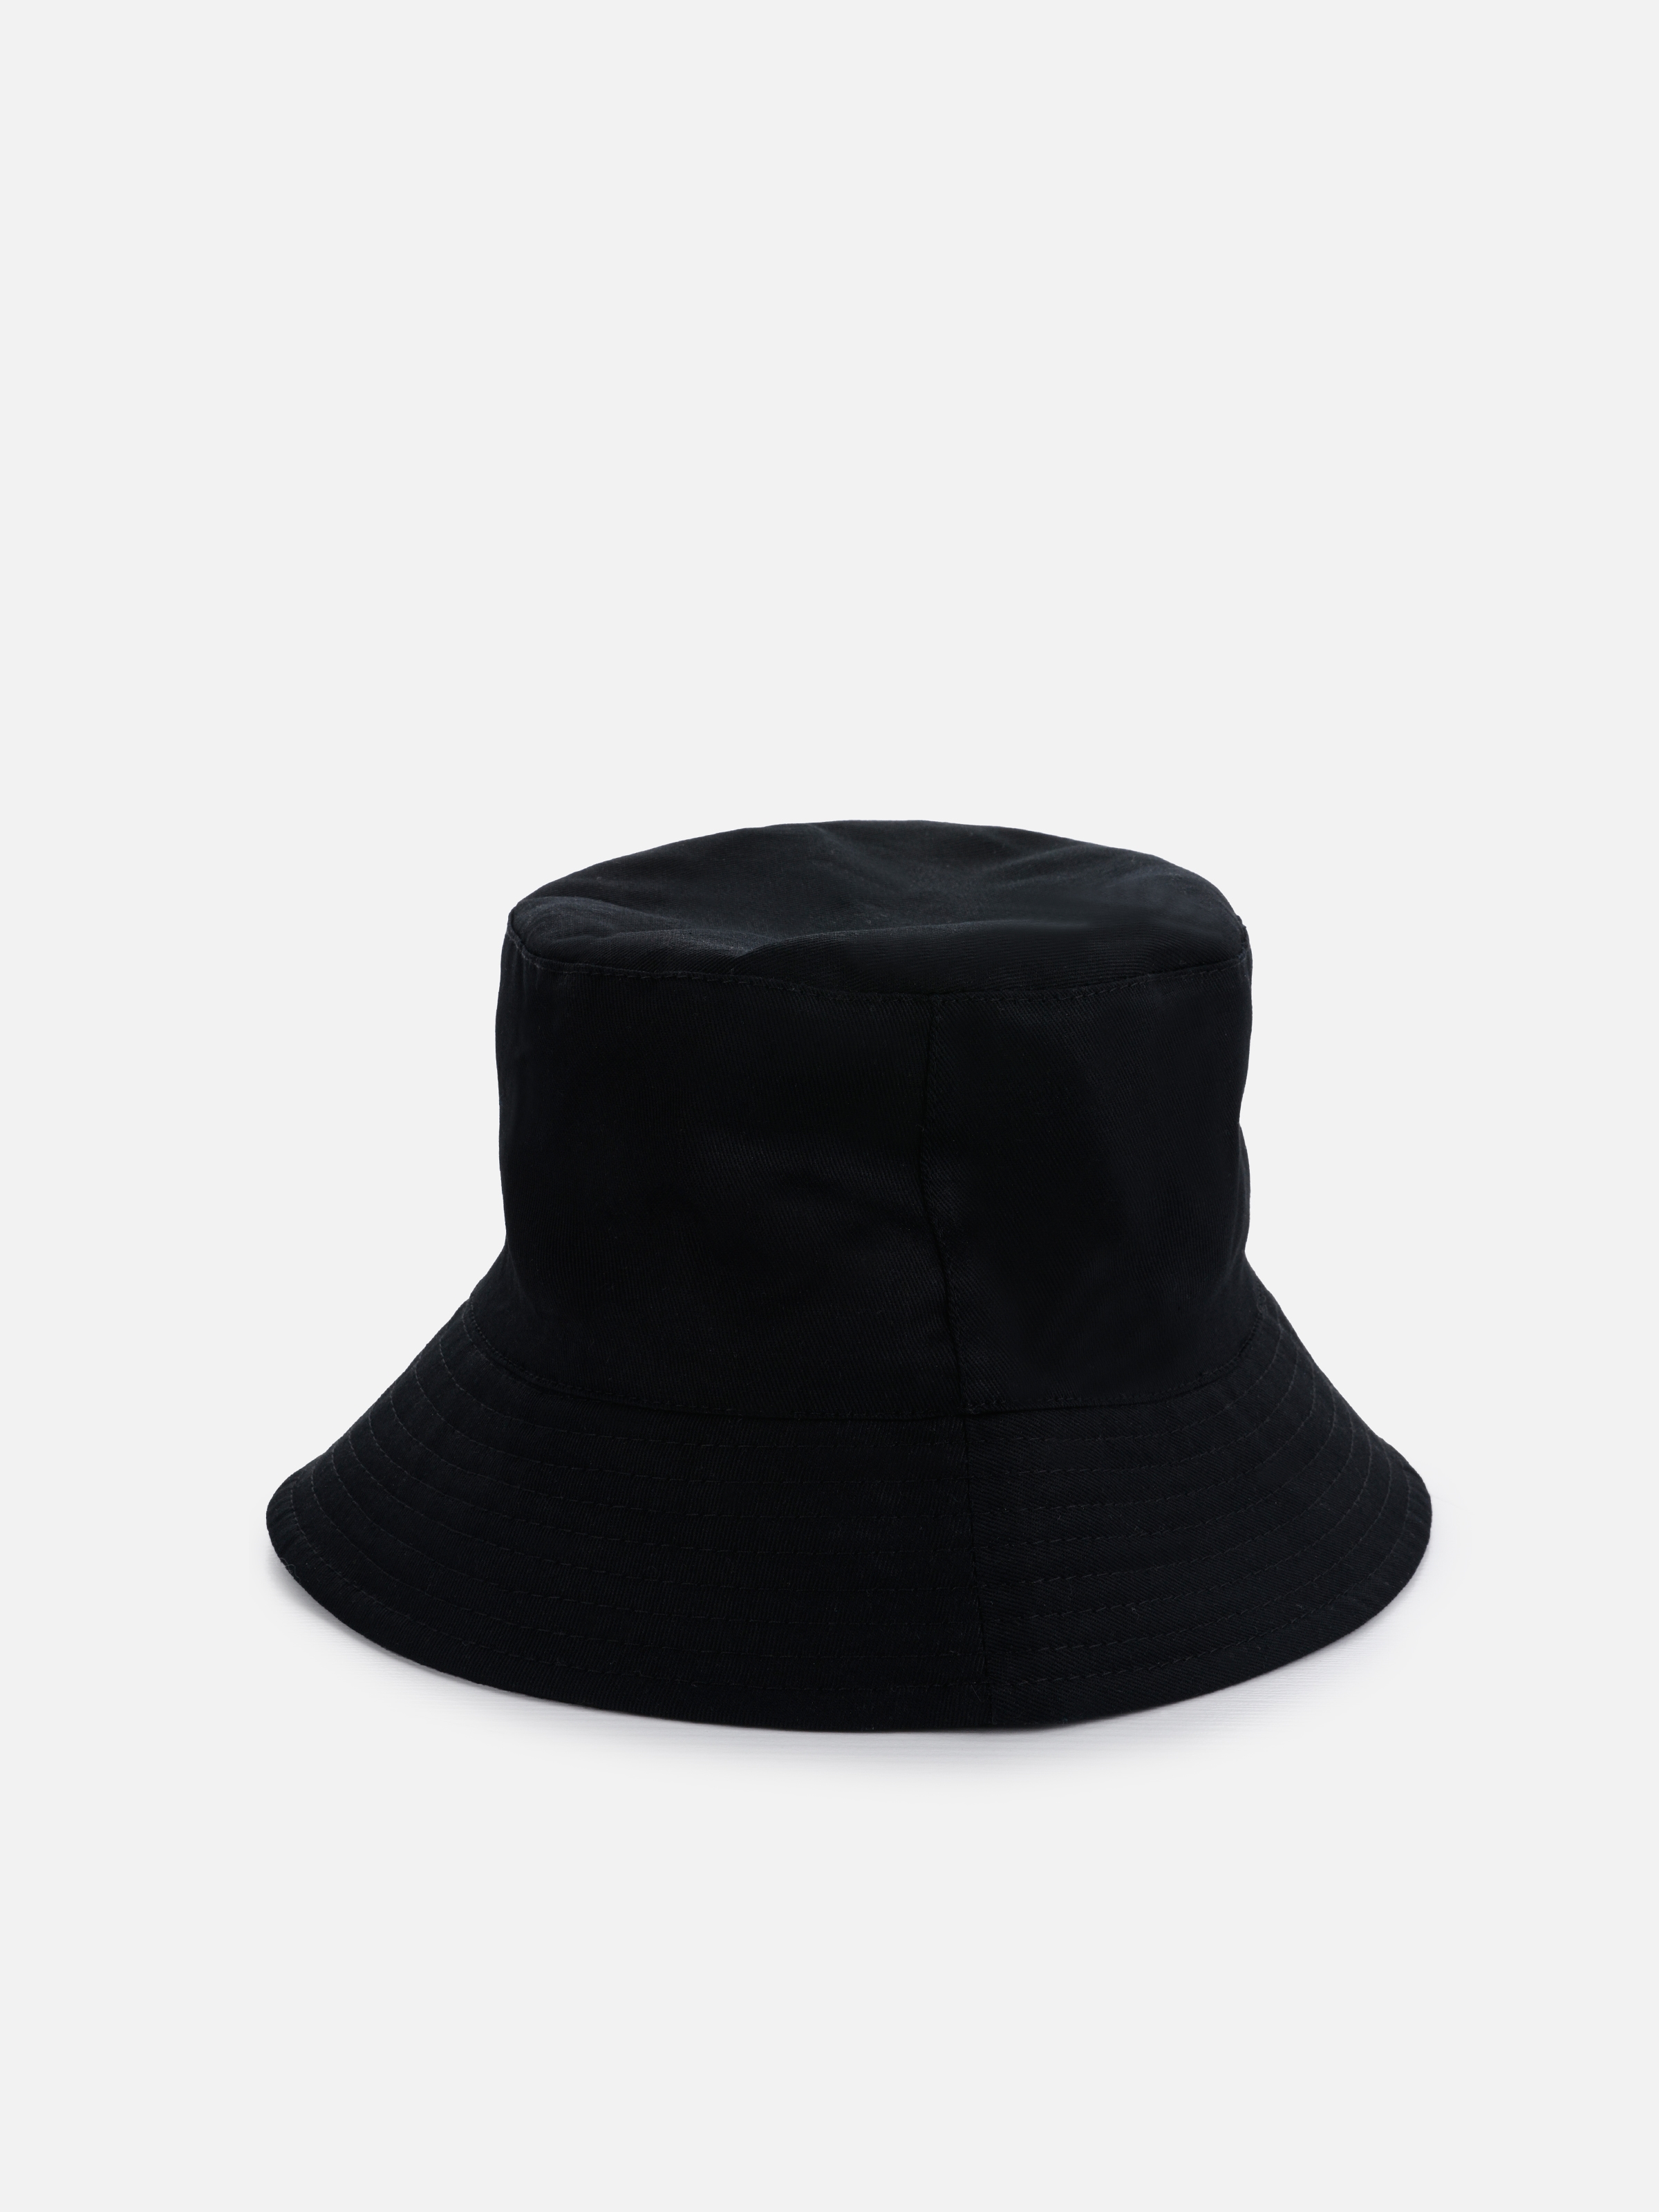 Baskılı Siyah Erkek Şapka